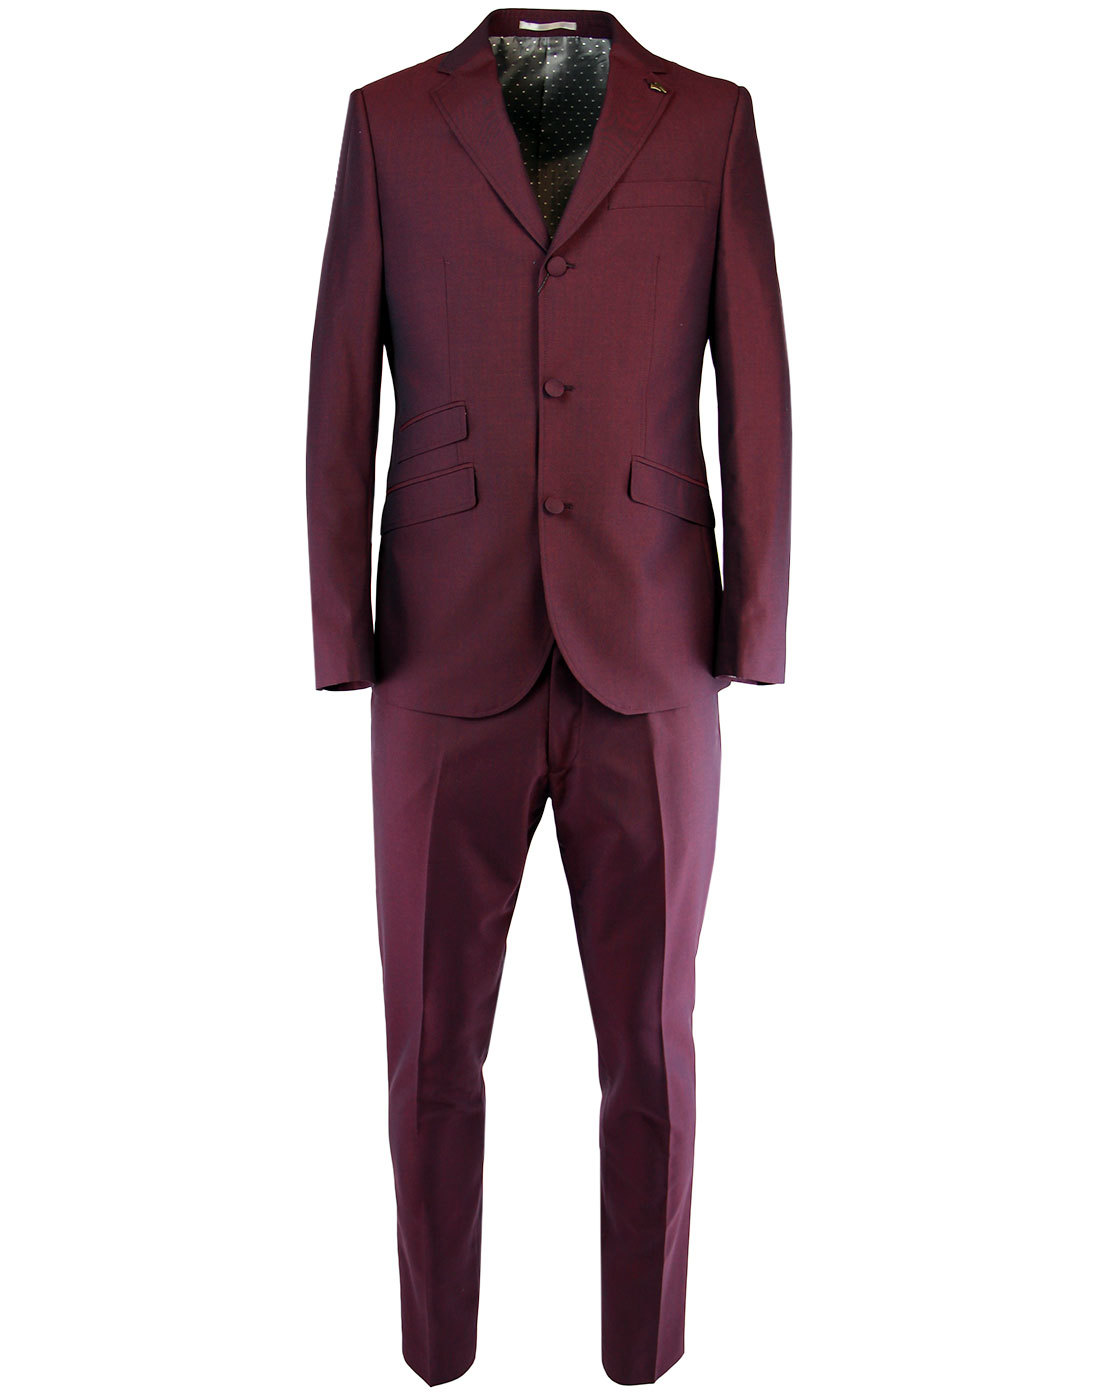 GABICCI VINTAGE Men's Retro Mod 70s Mod Tonic Suit in Port